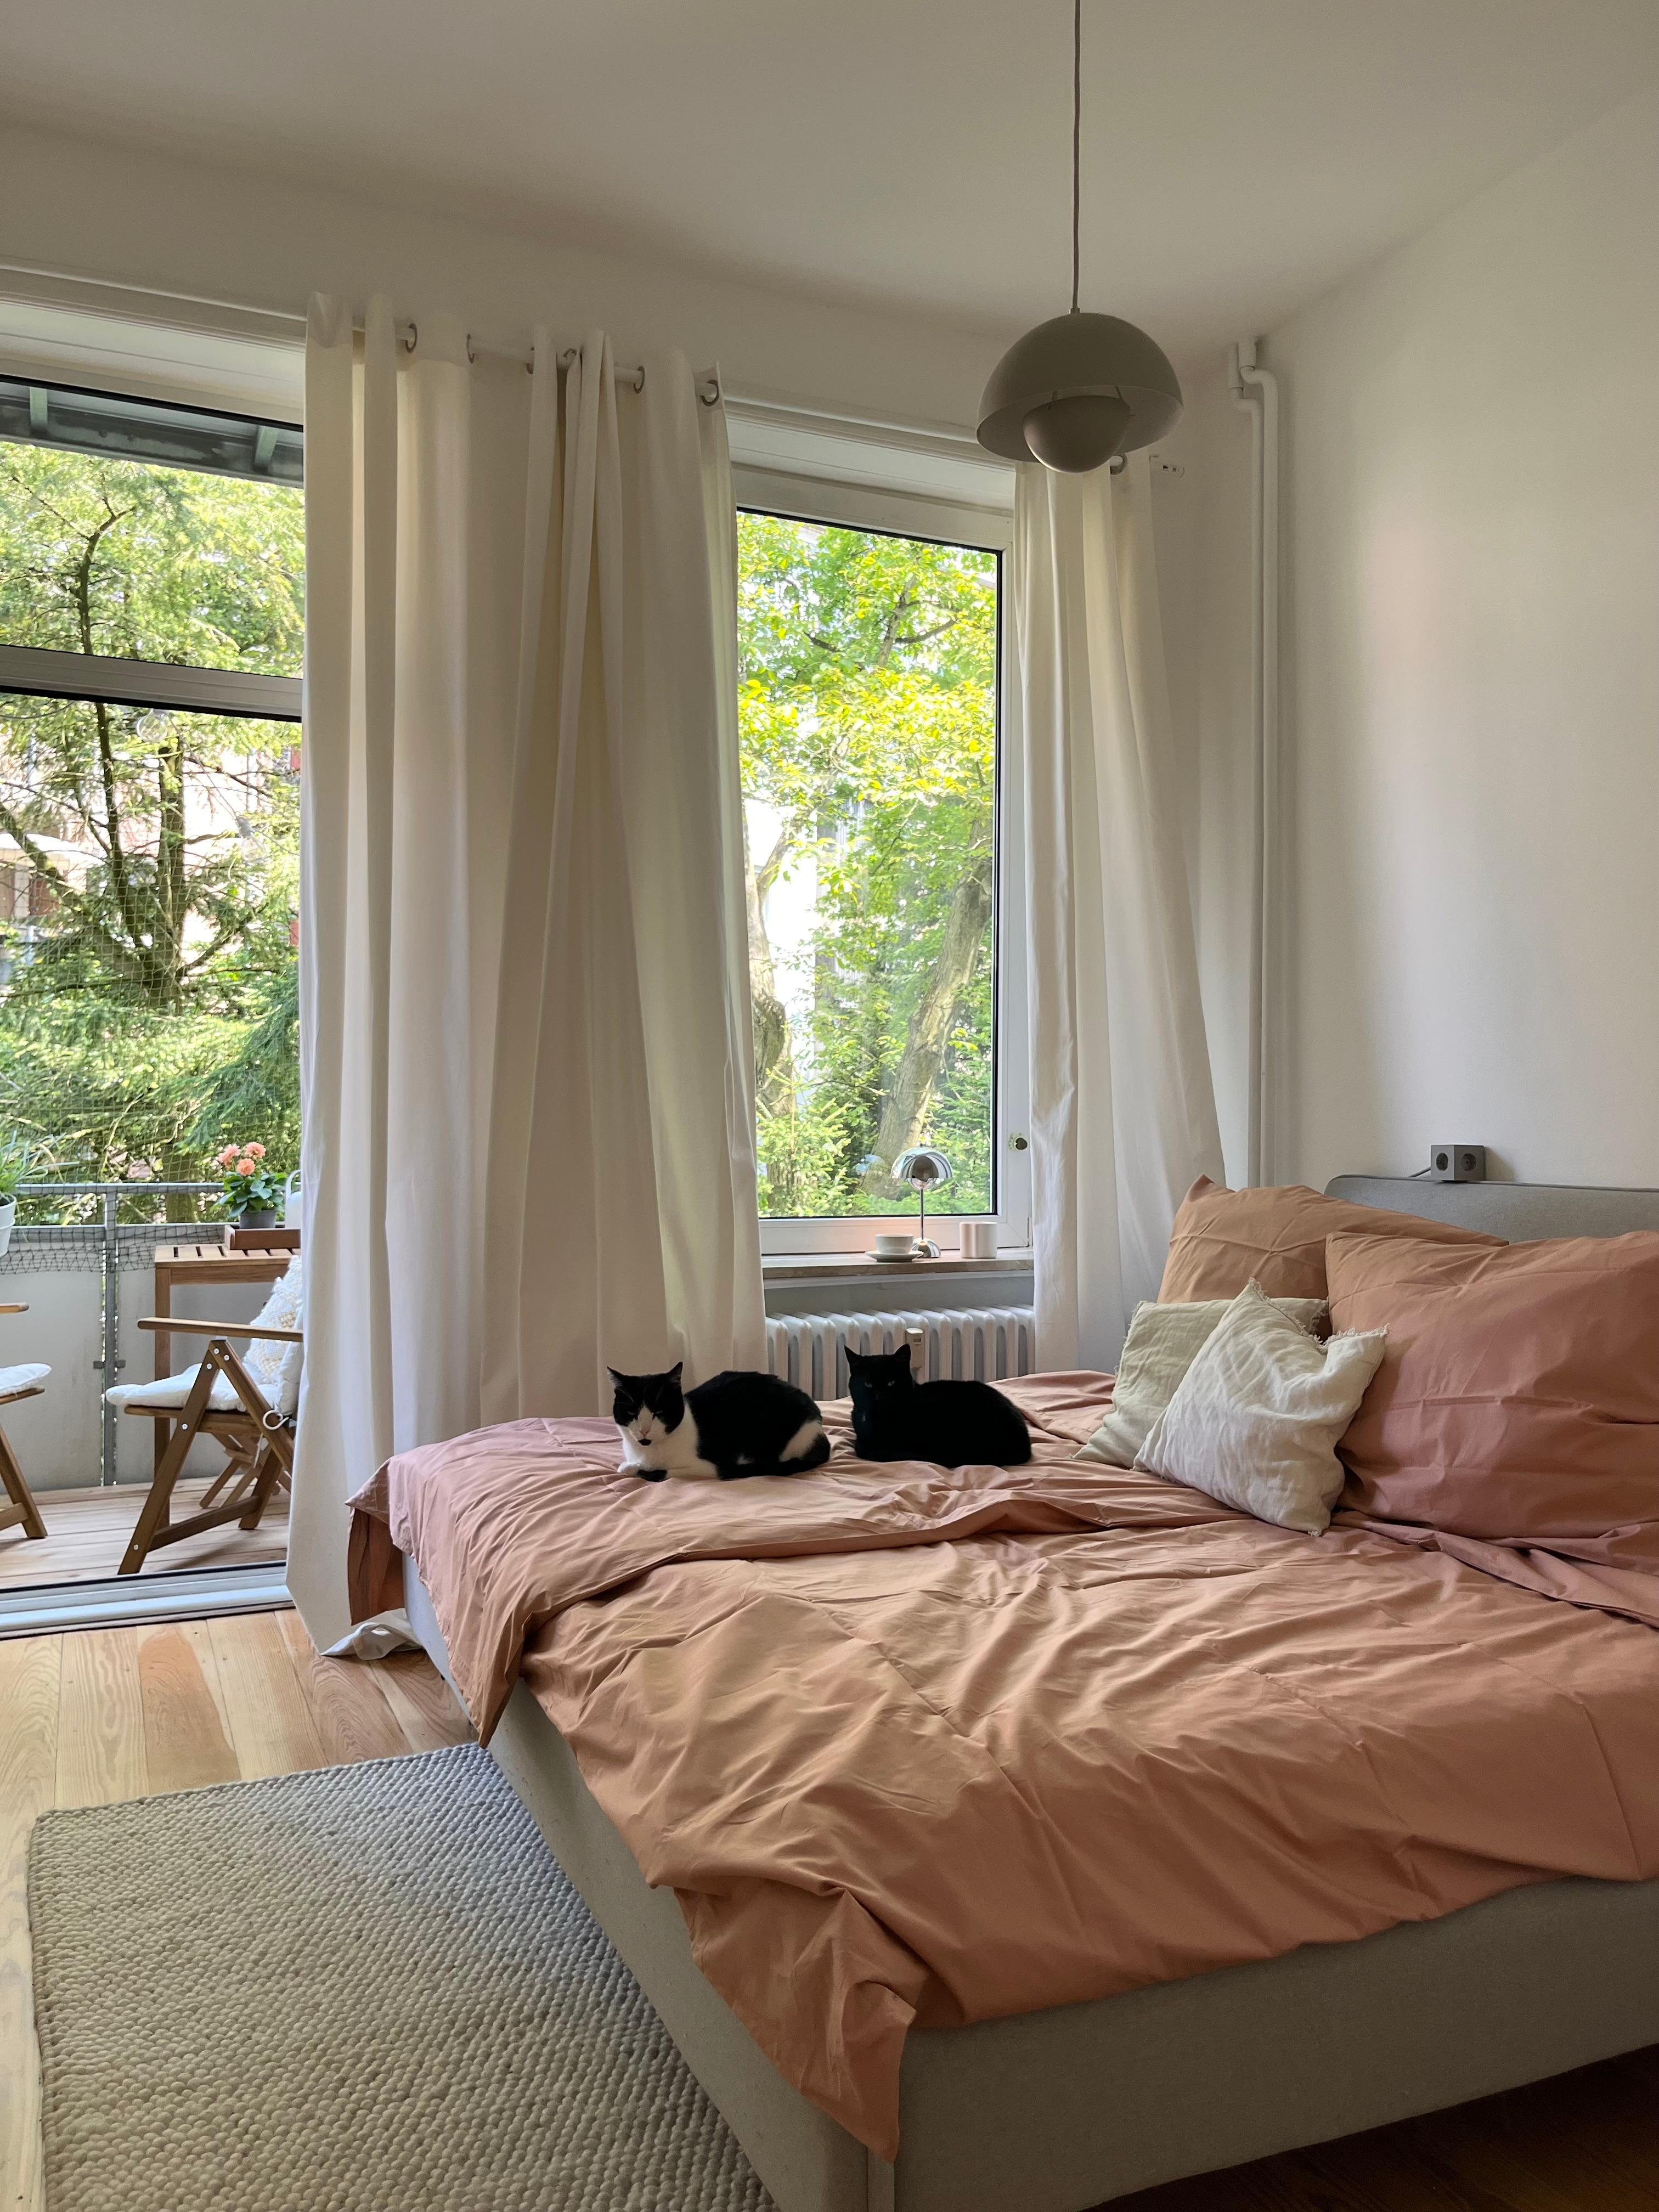 #schlafzimmer #altbauwohnung #katzen #altbauliebe #blickinsgrüne #balkon #skandinavischwohnen 